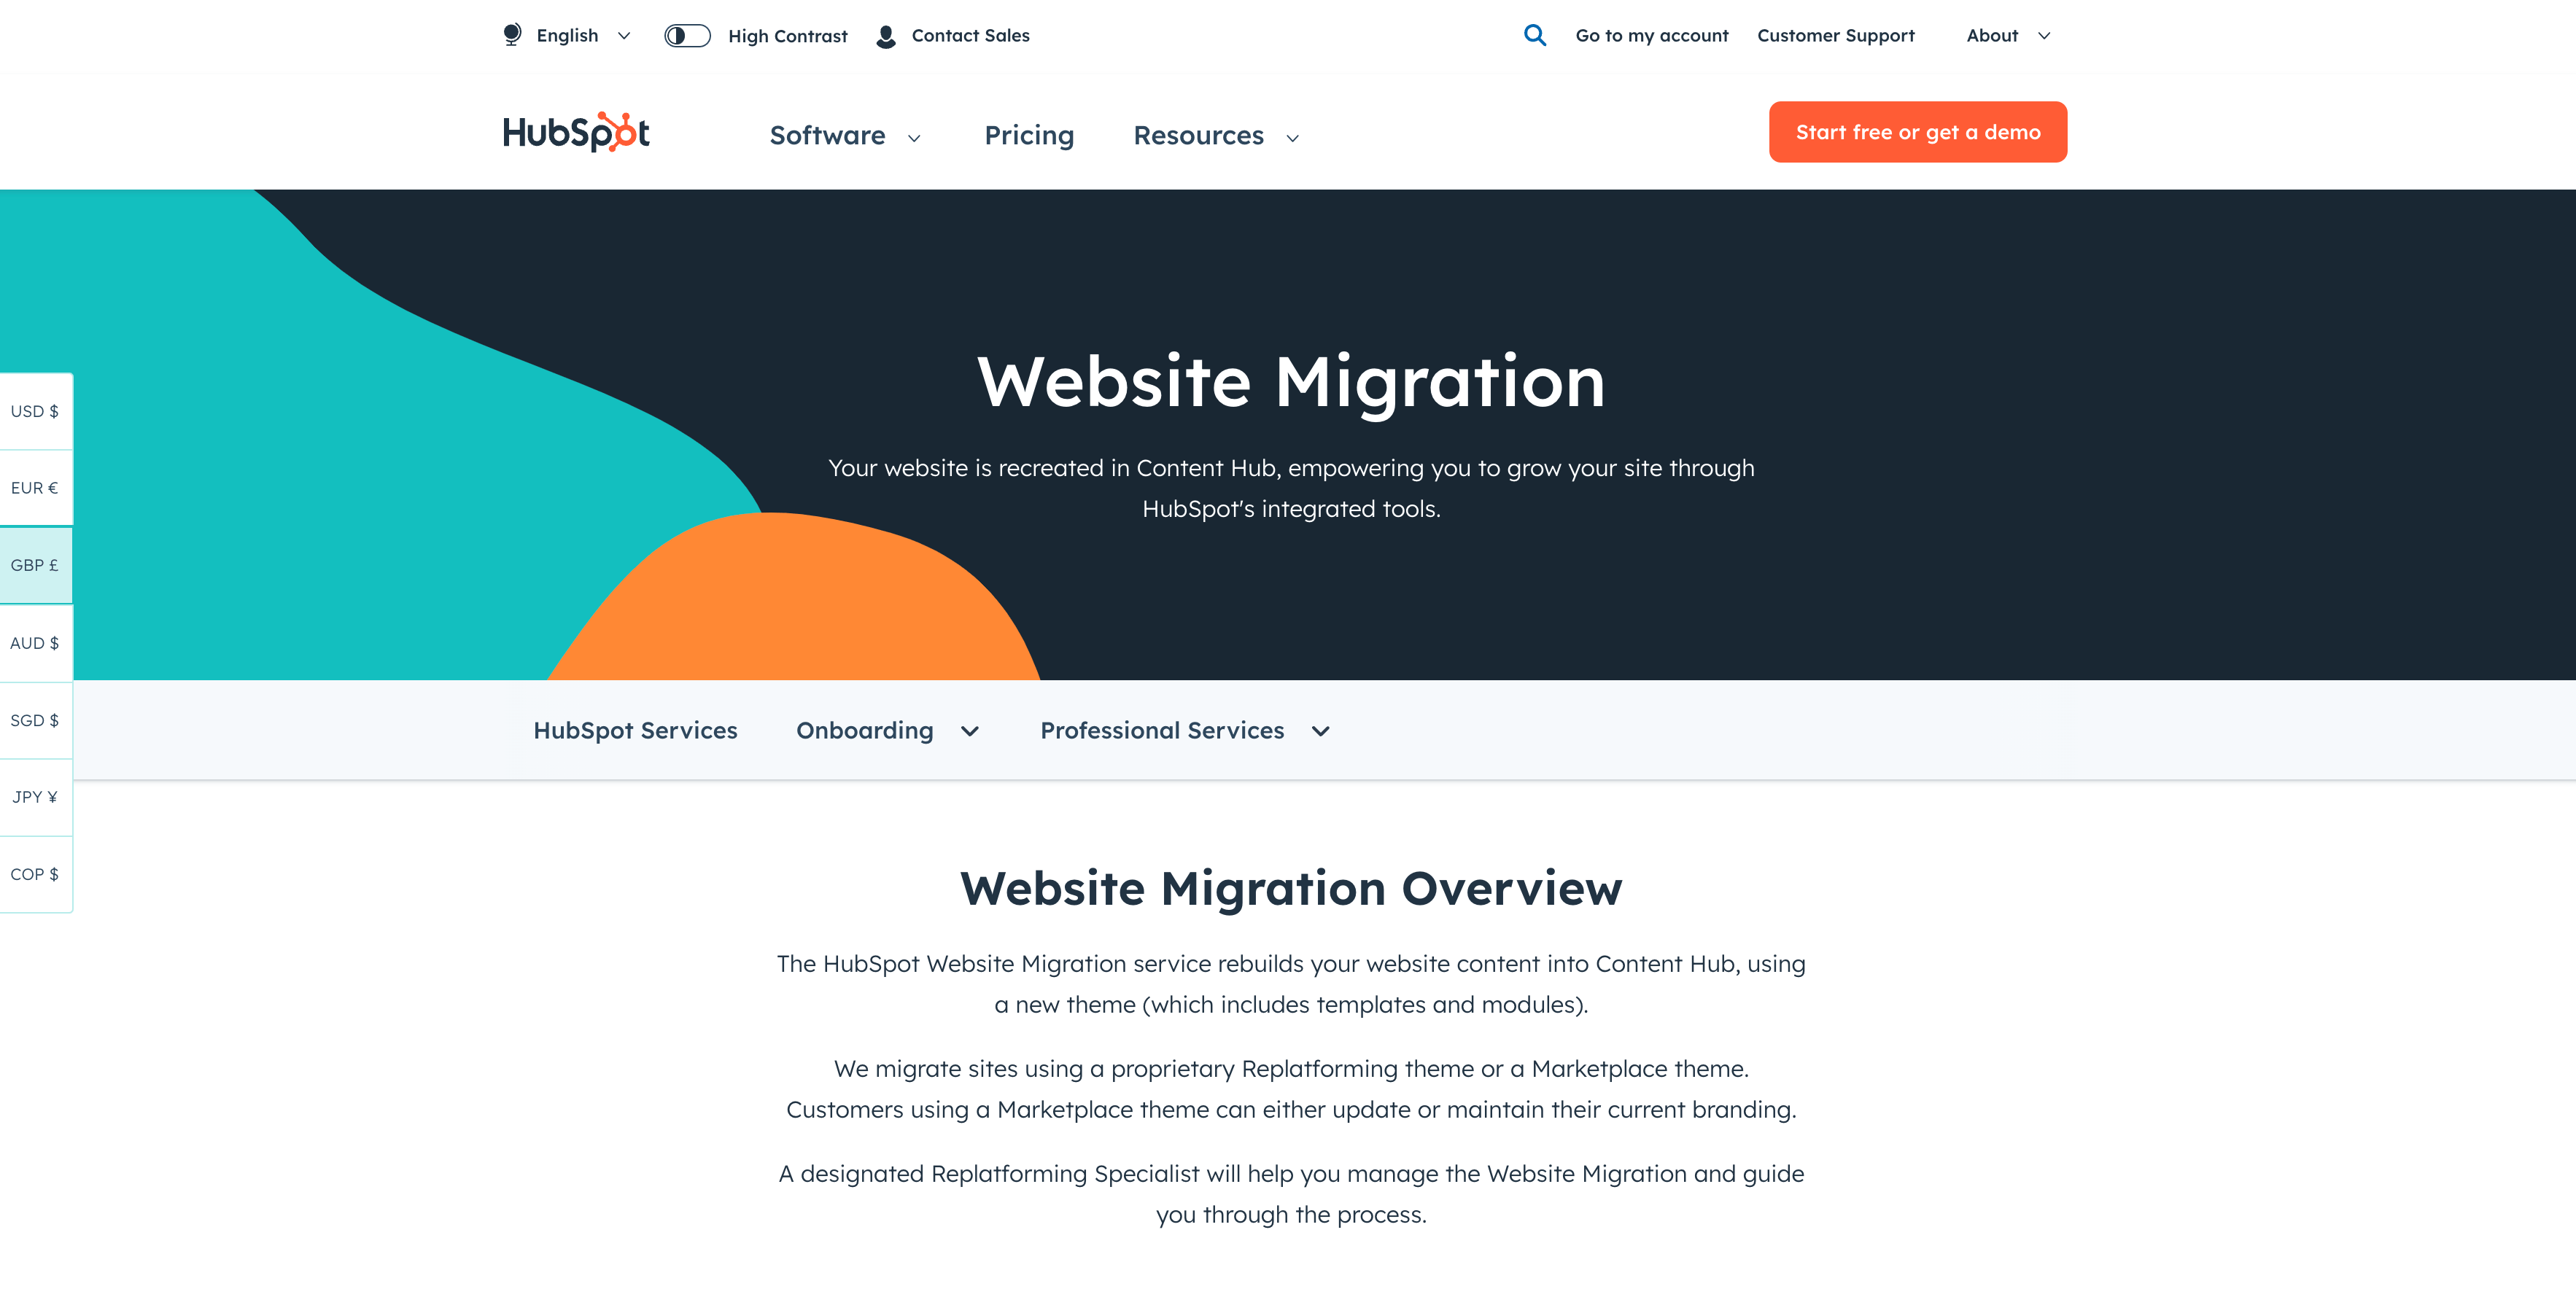 hubspot-website-migration-2-min